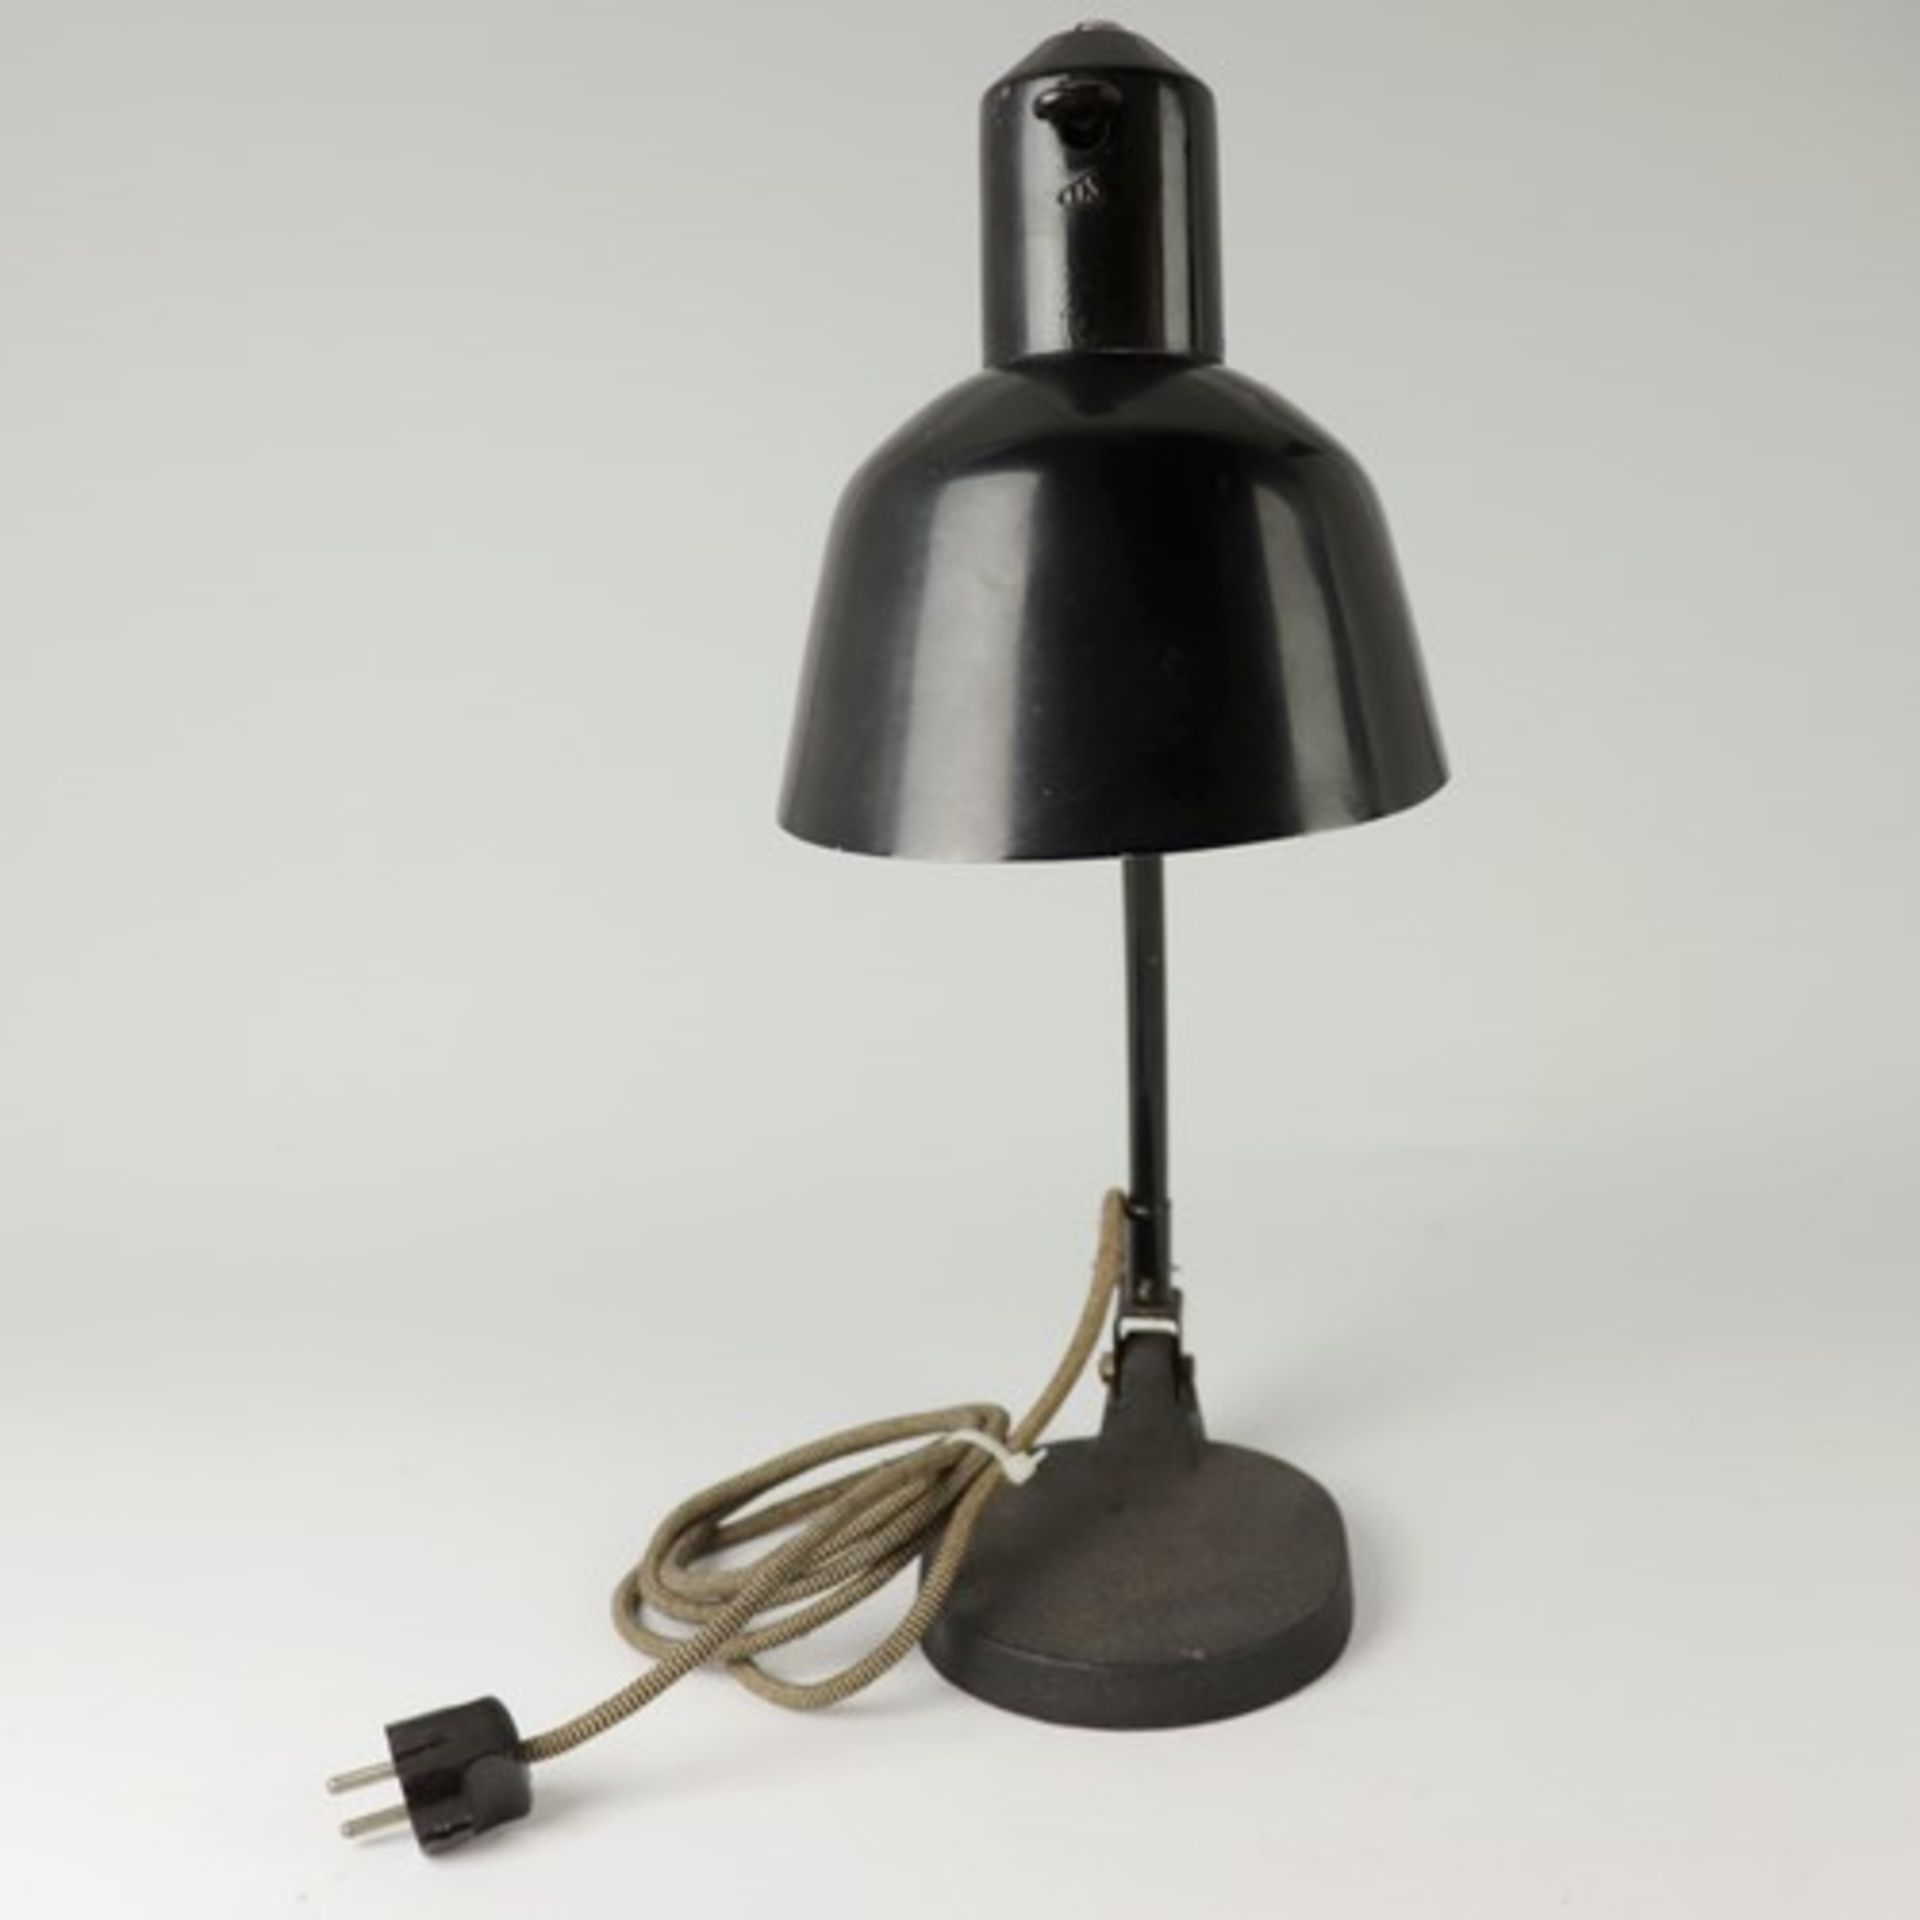 Tischlampe - Art-décoim Schirm bez., Prägemarke SIS, um 1920, Werkstattlampe/Gelenklampe - Bild 4 aus 6